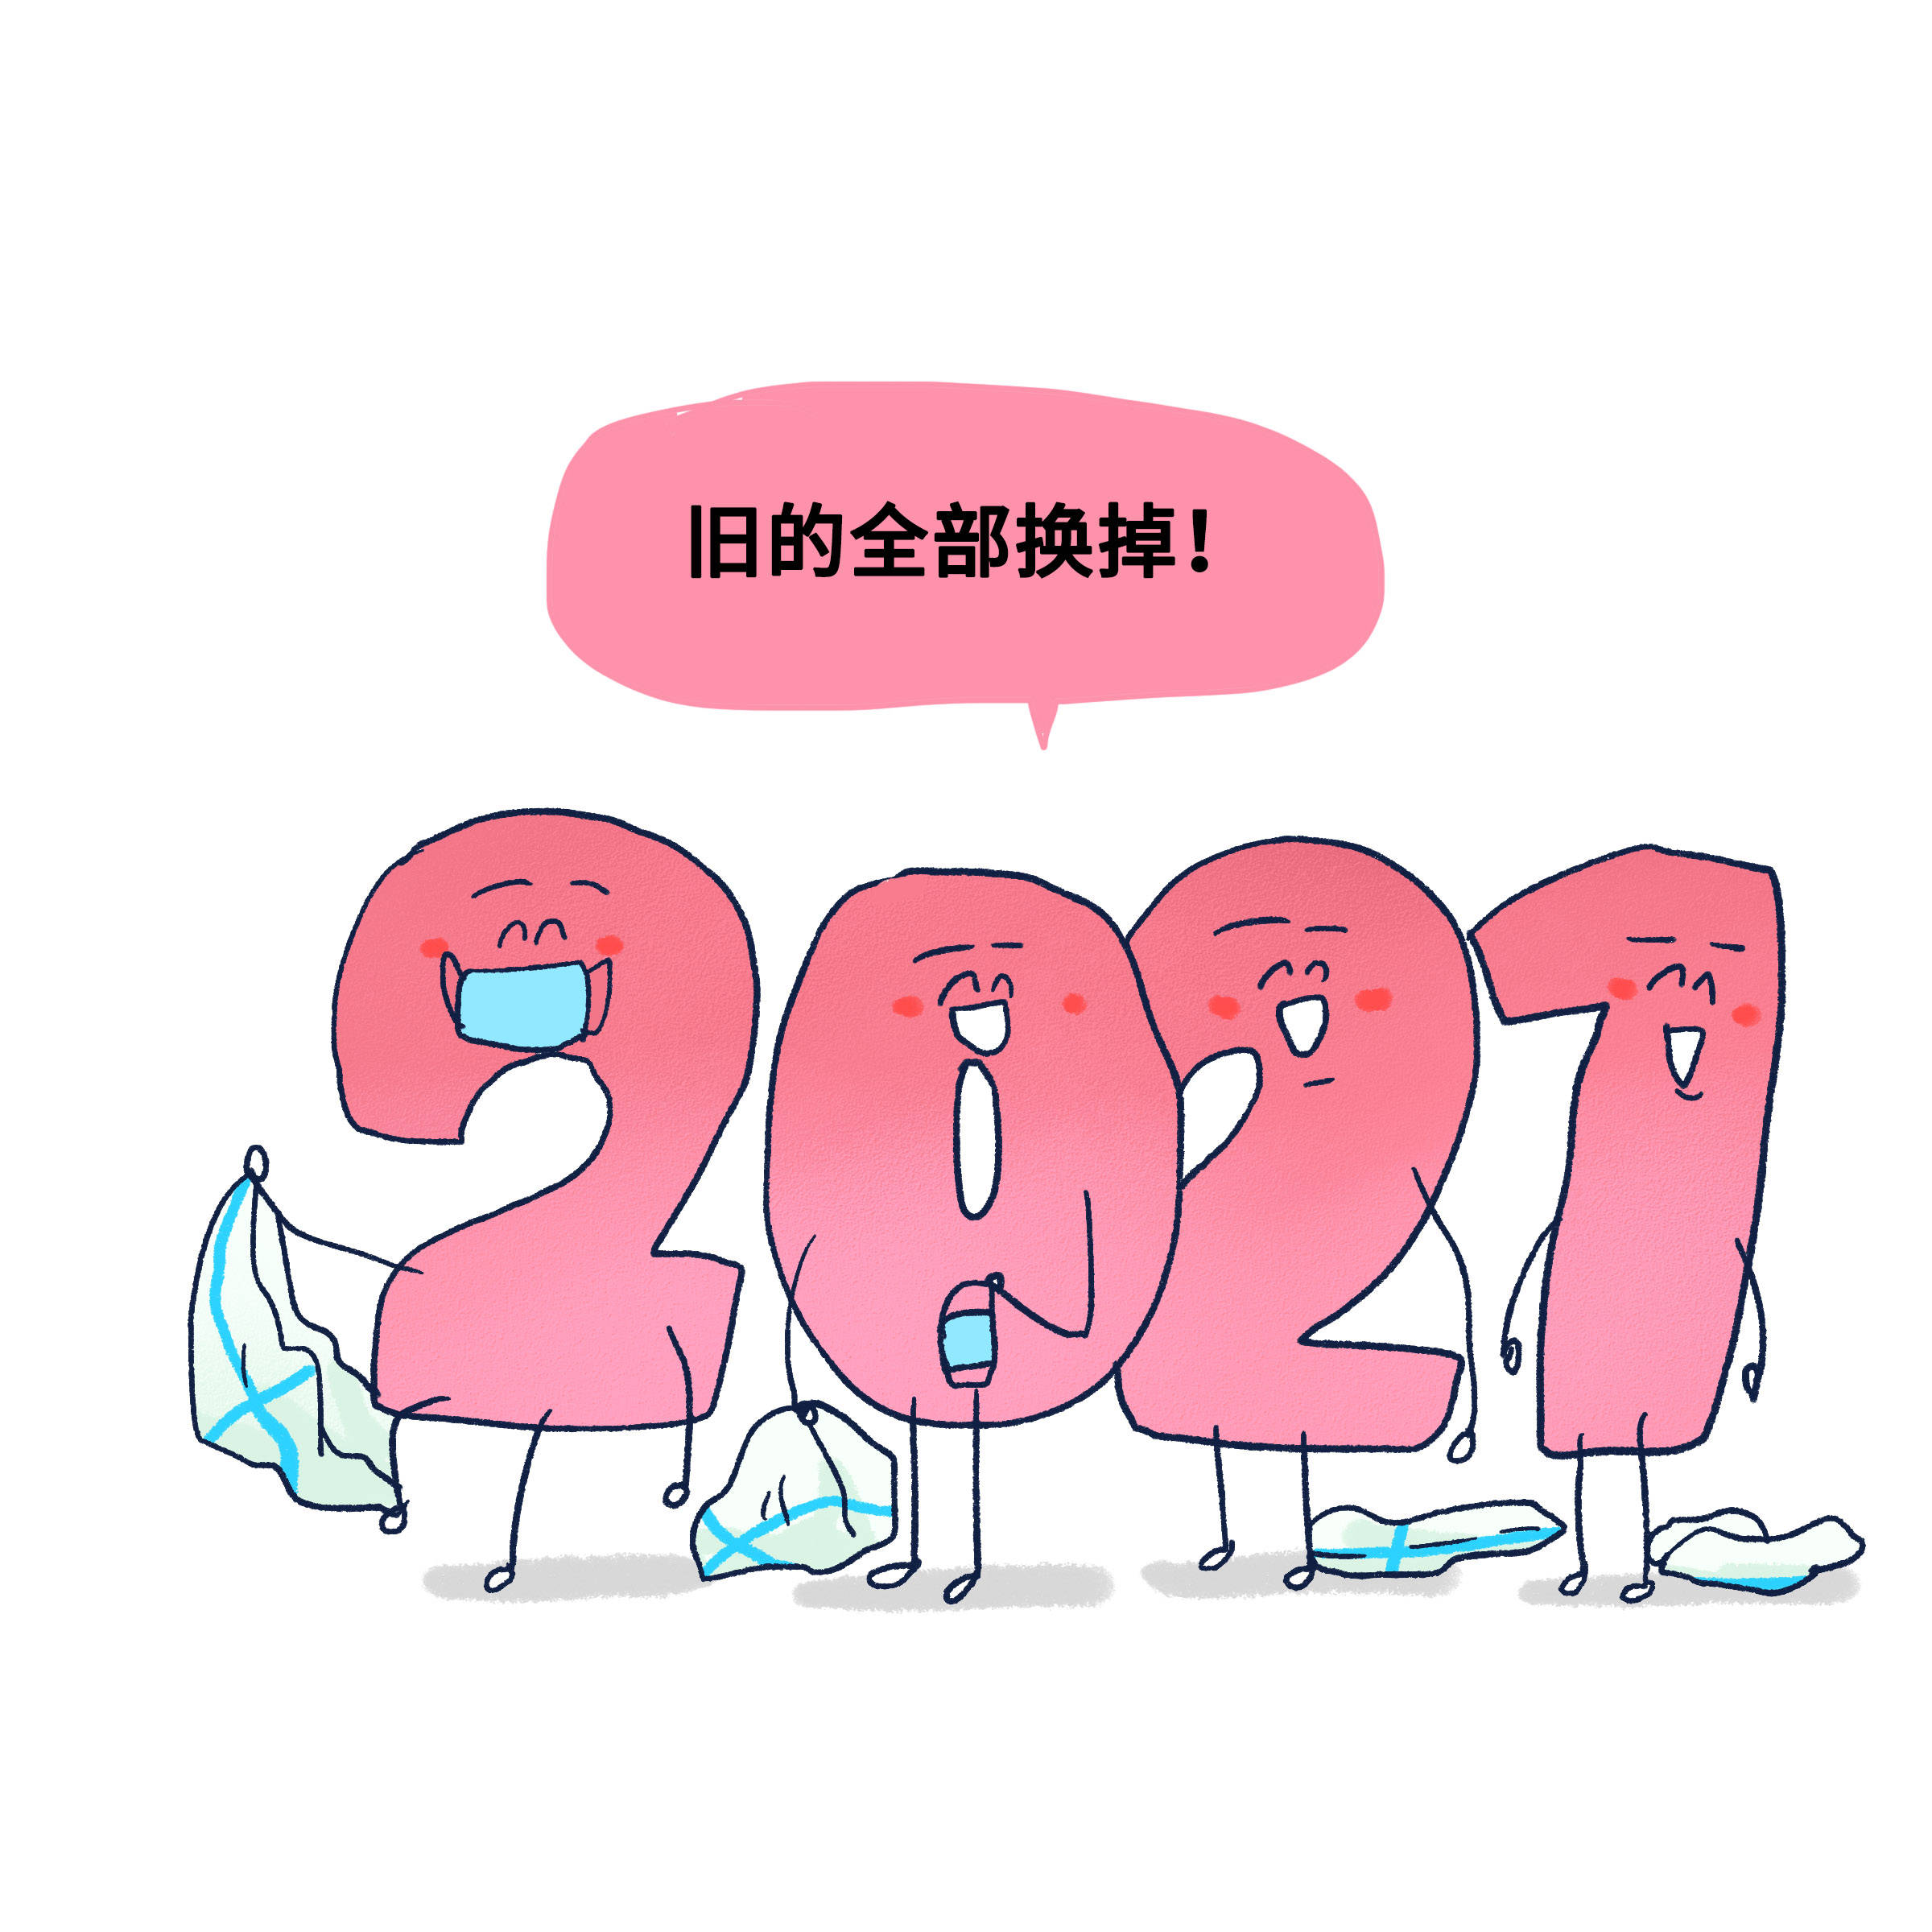 2020—2021交接图图片